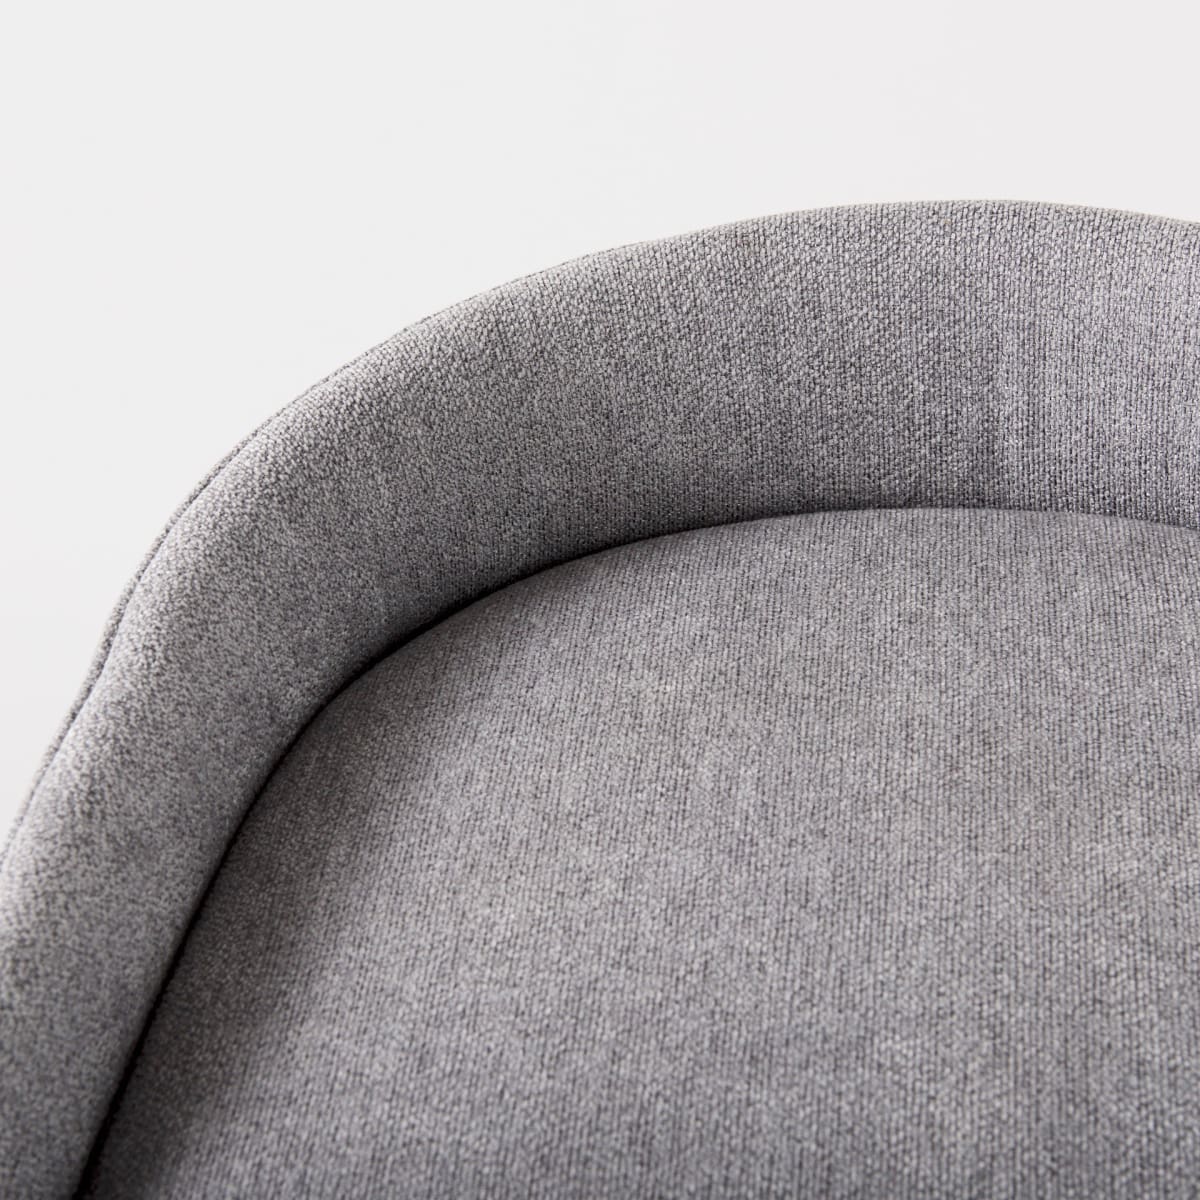 Hollyfield Bar Counter Stool Gray Fabric | Gray Metal | Bar - bar-stools